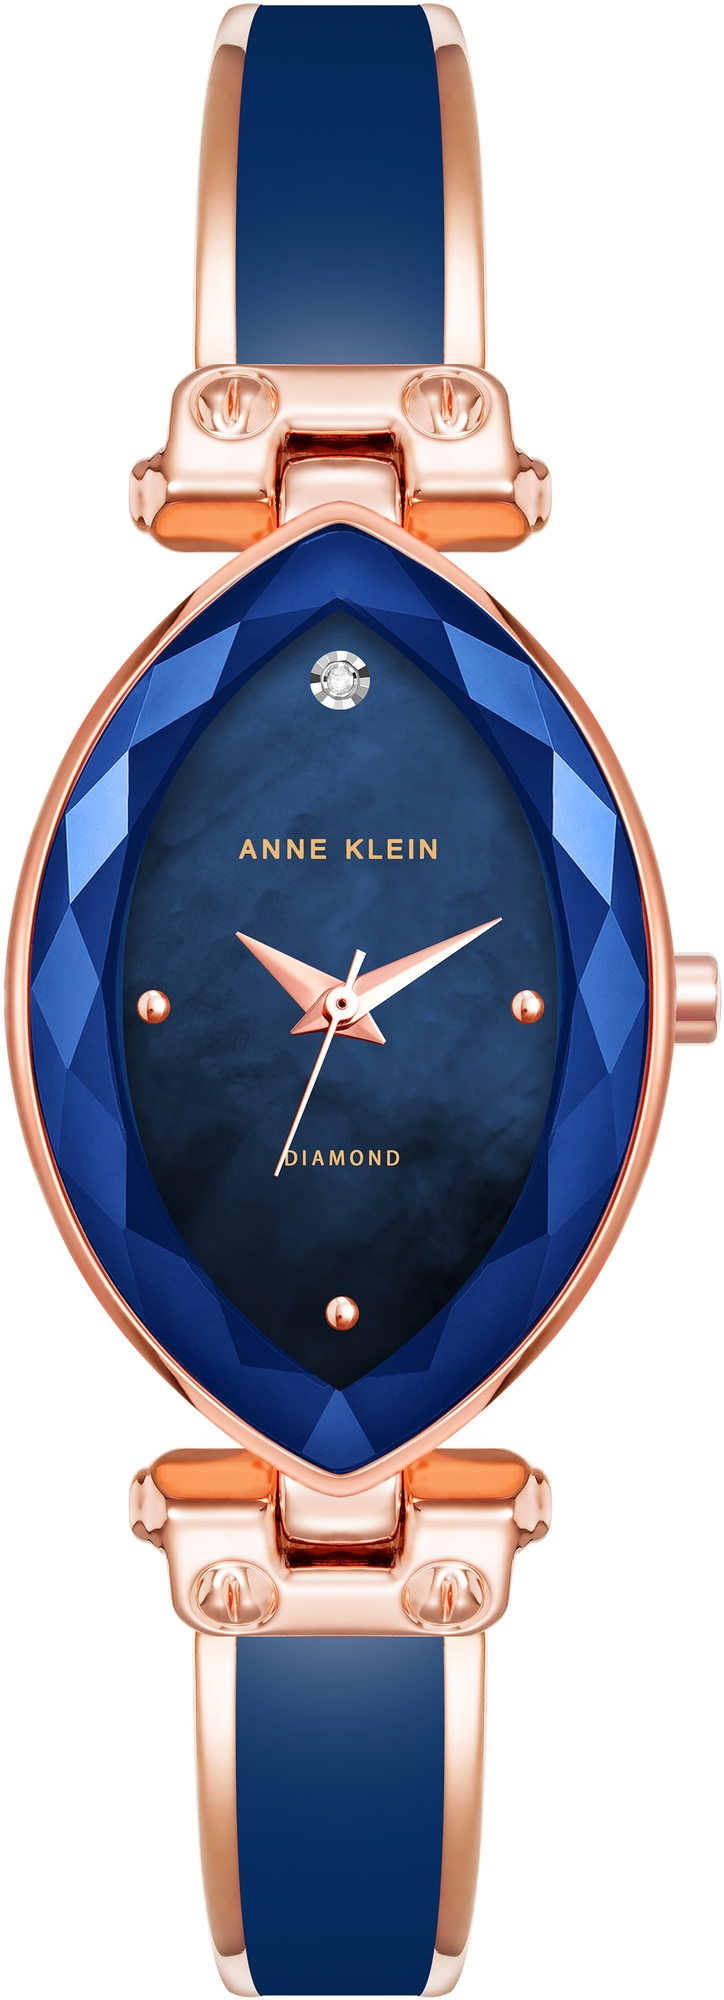 Наручные часы Anne Klein 4018NVRG наручные часы anne klein 3690bhrg